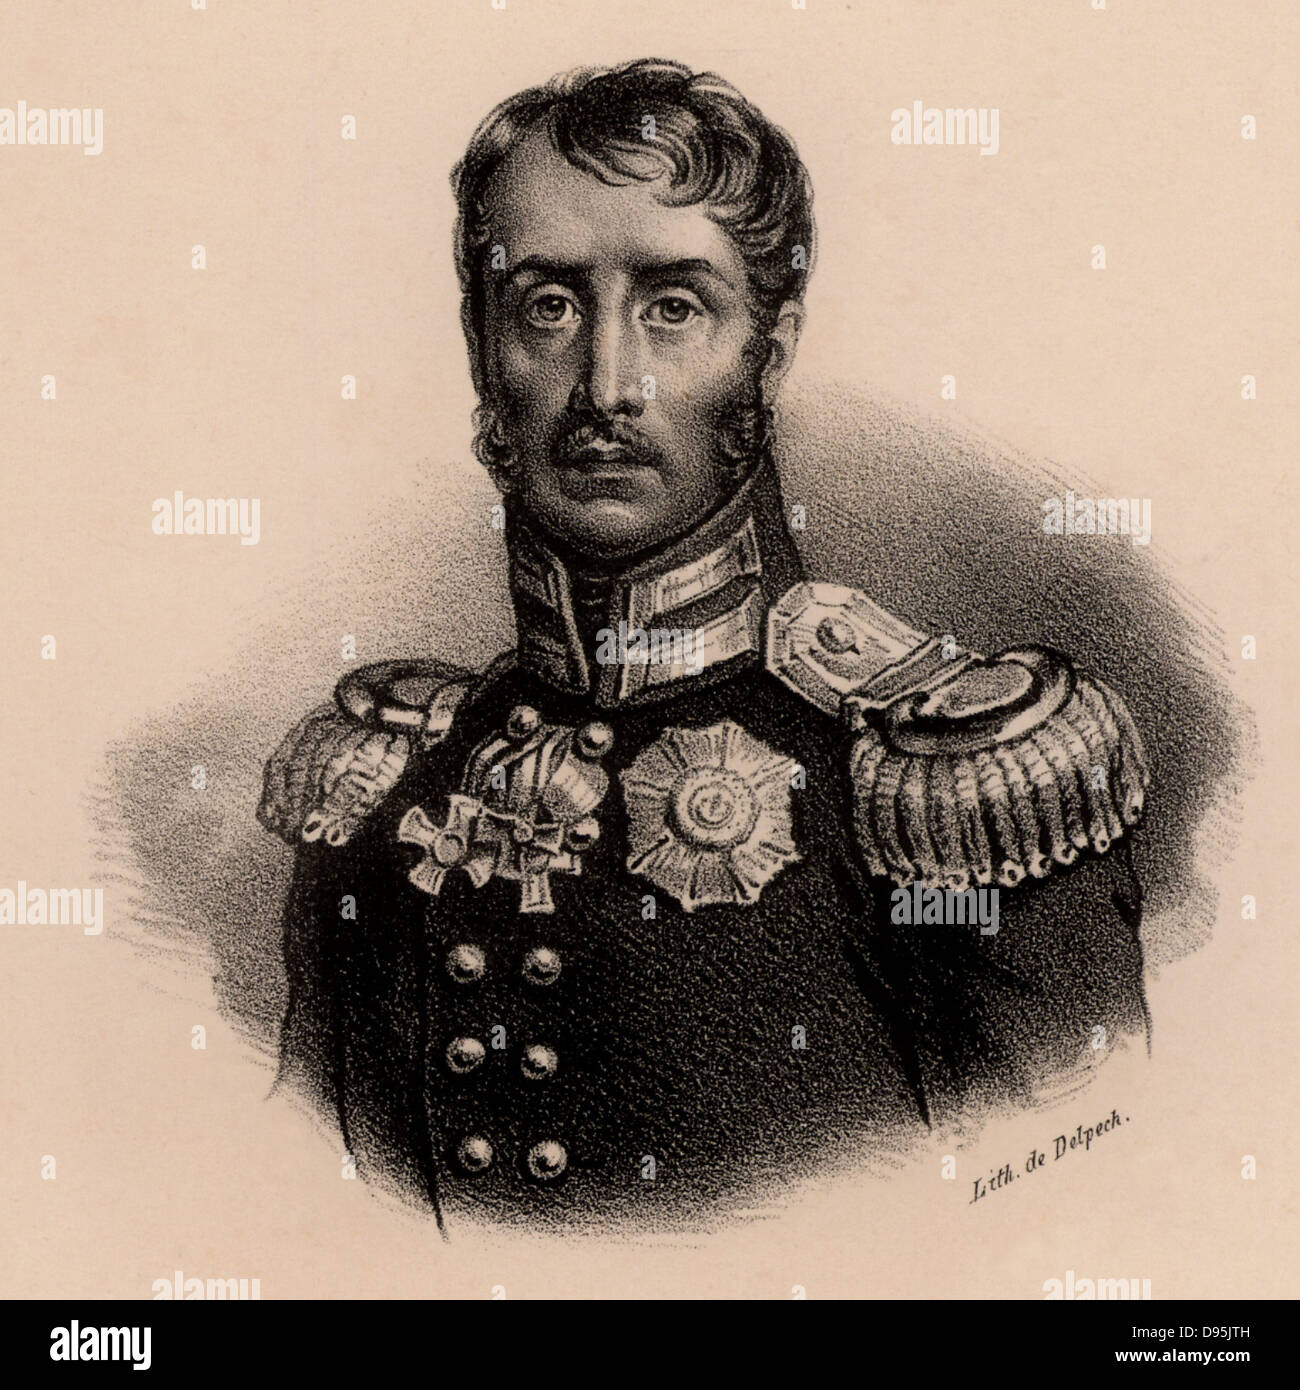 Frederick-William III (1770-1840) roi de Prusse à partir de 1797. Déclare la guerre à Napoléon Bonaparte en 1806. Lithographie c1830. Banque D'Images